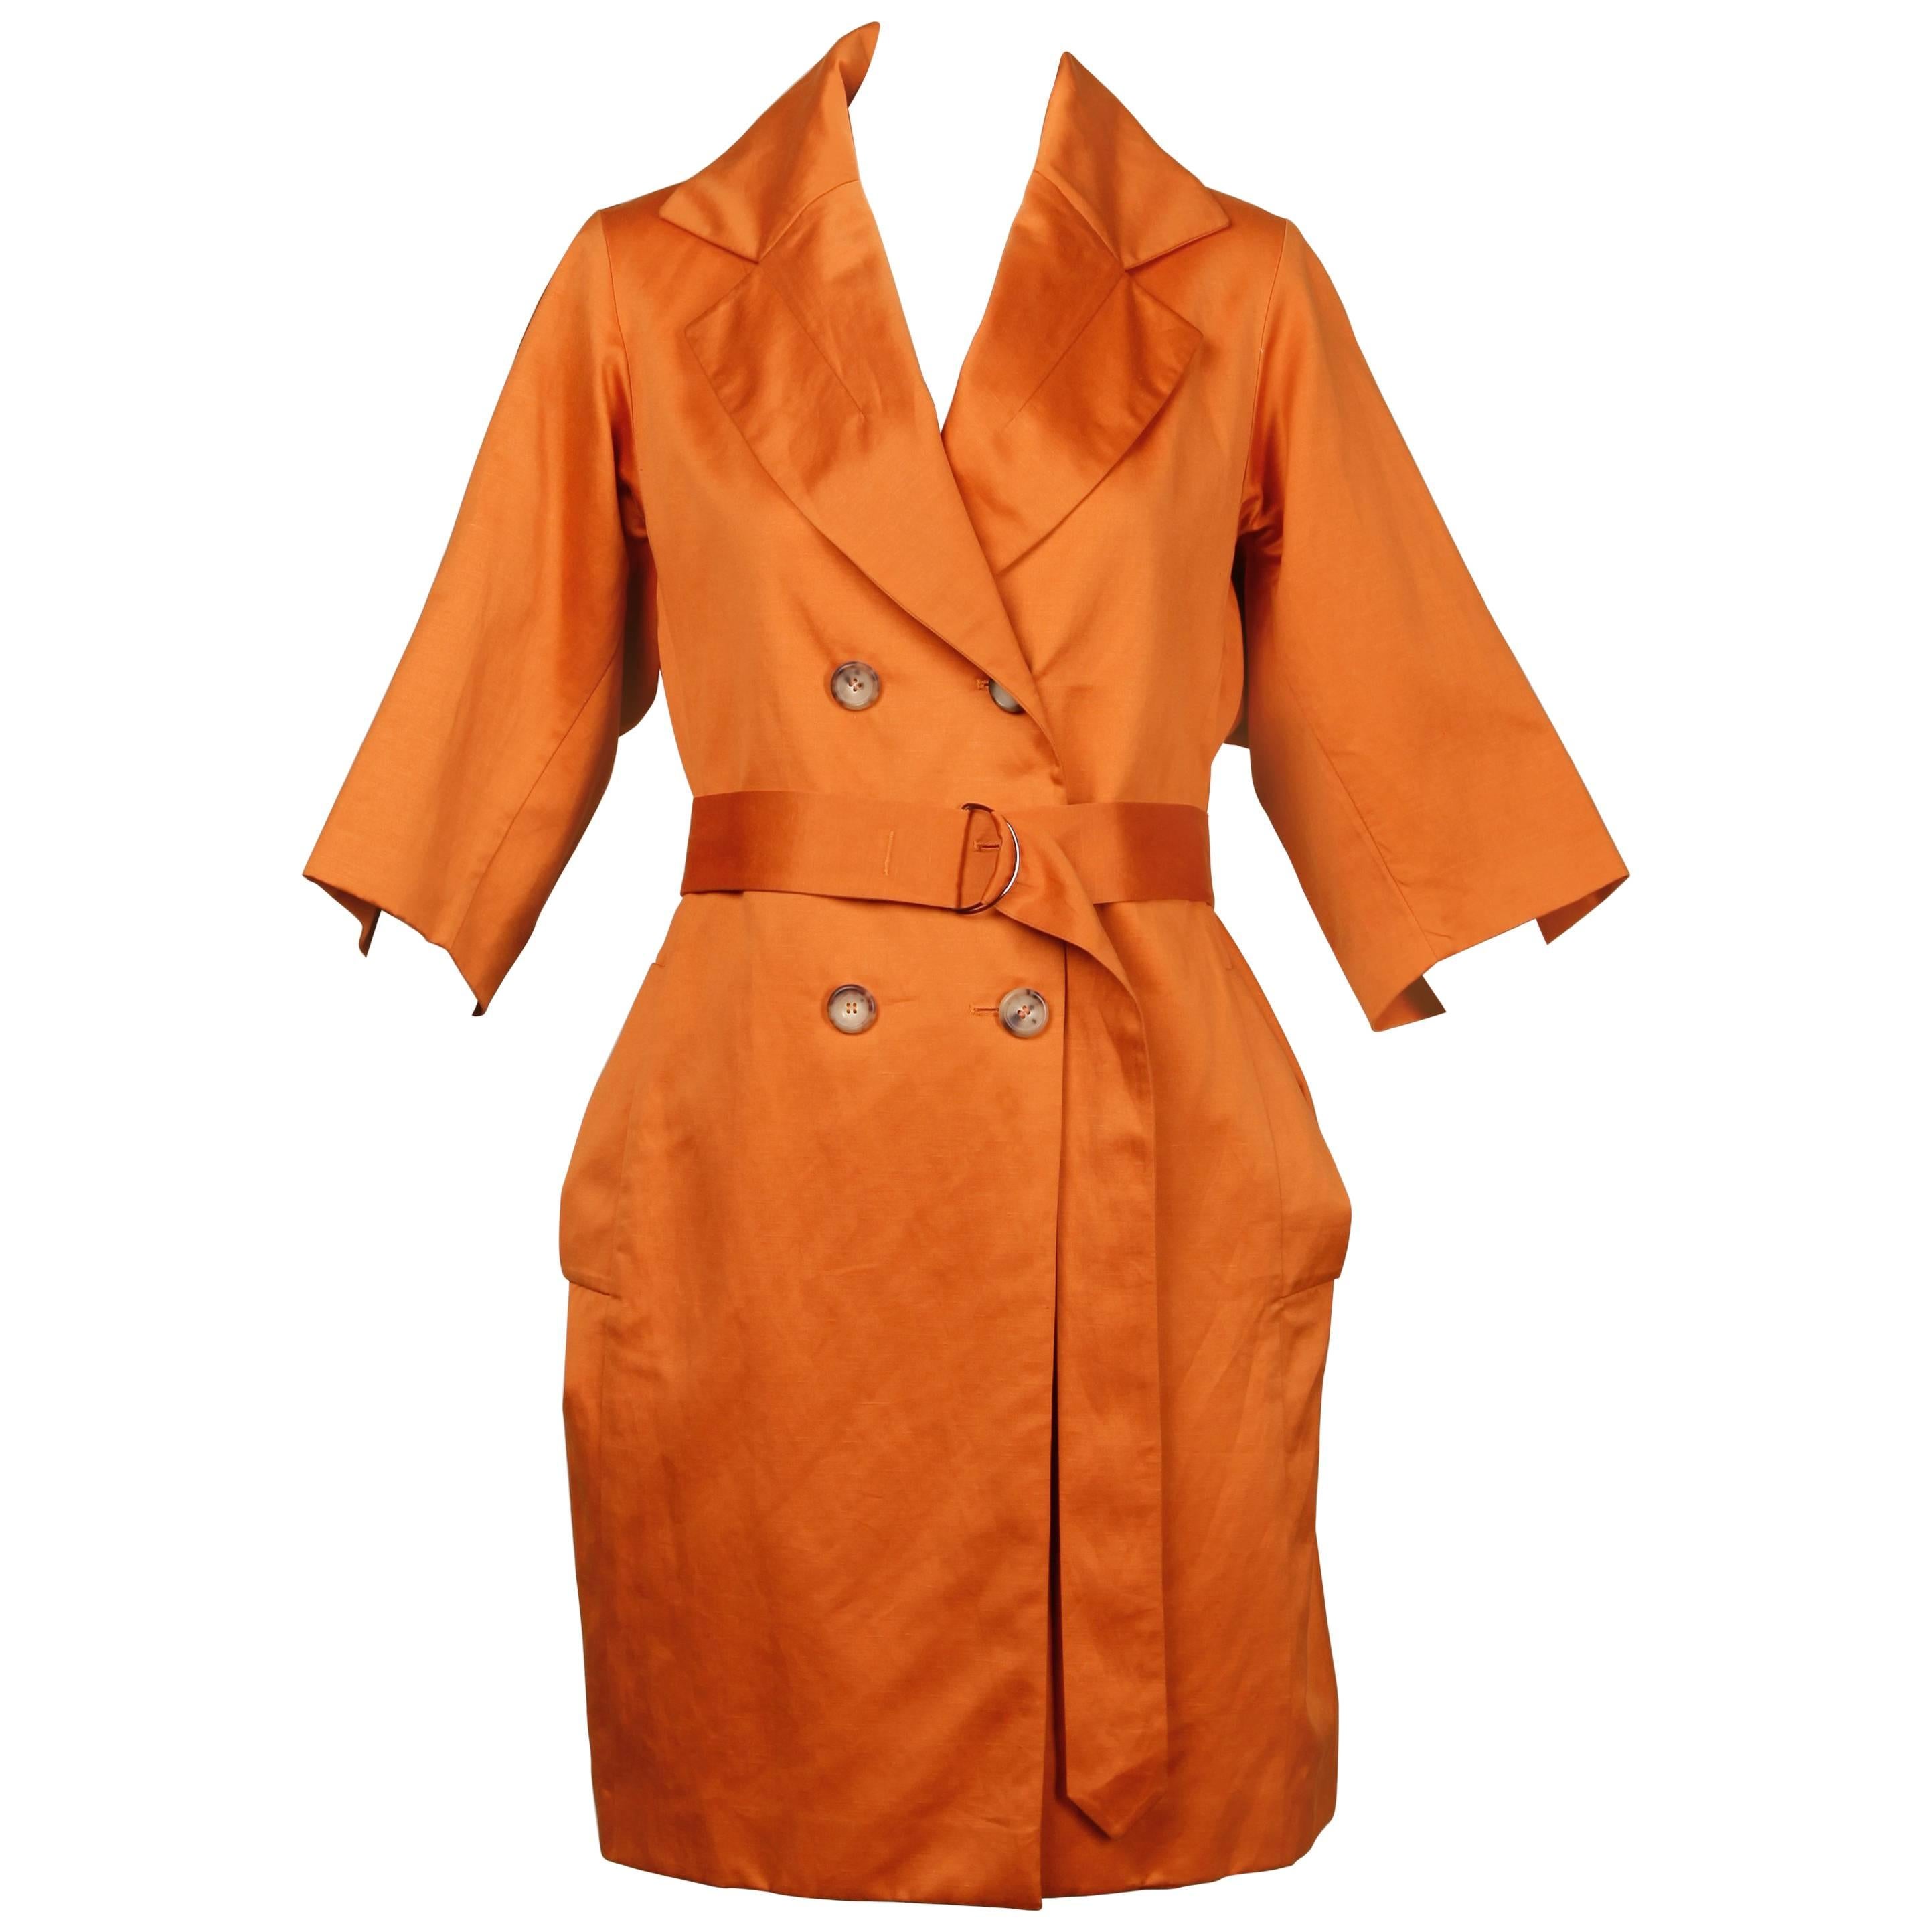 Yves Saint Laurent Rost/ Orange Herbst Trenchcoat Jacke